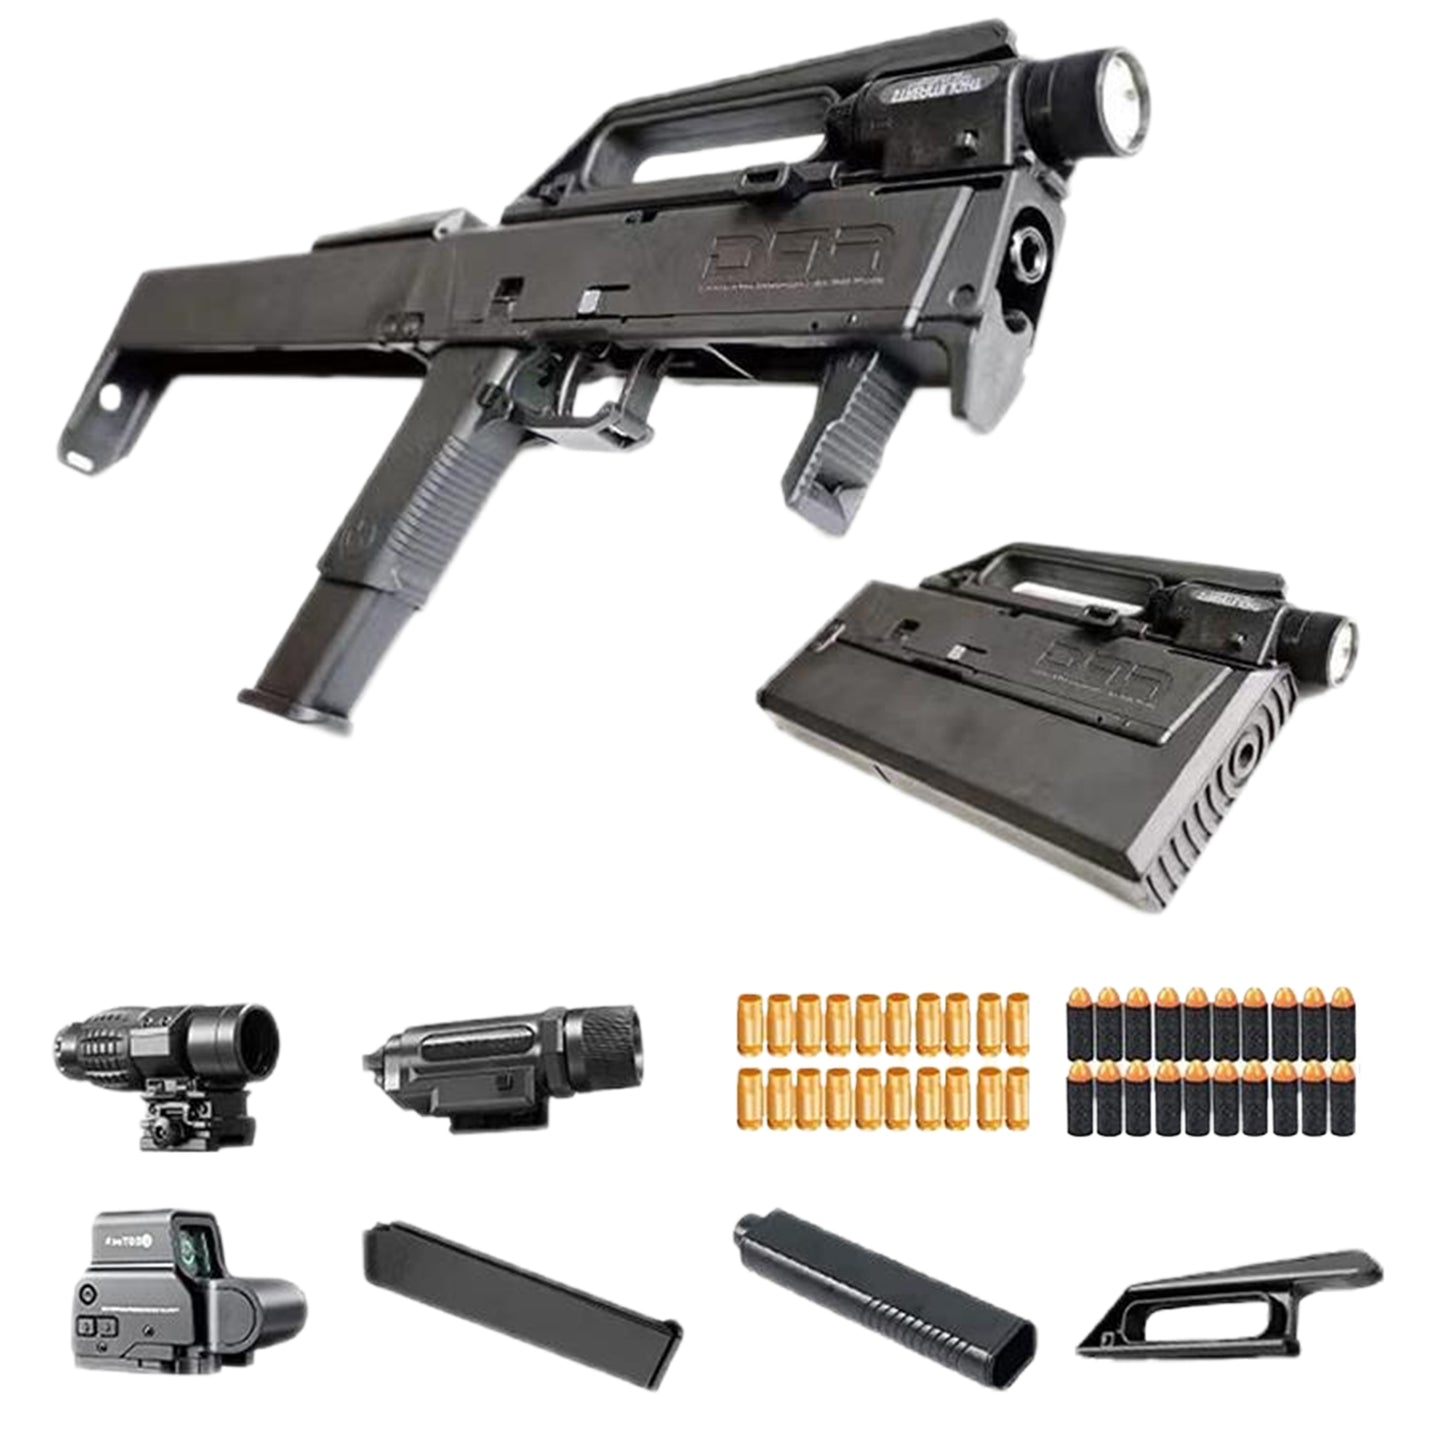 サブマシンガン FMG9 EVAソフト弾丸 変形する銃 ワンタッチ展開 サブマシンガン 短機関銃 ライフル おもちゃ銃 おもちゃ銃